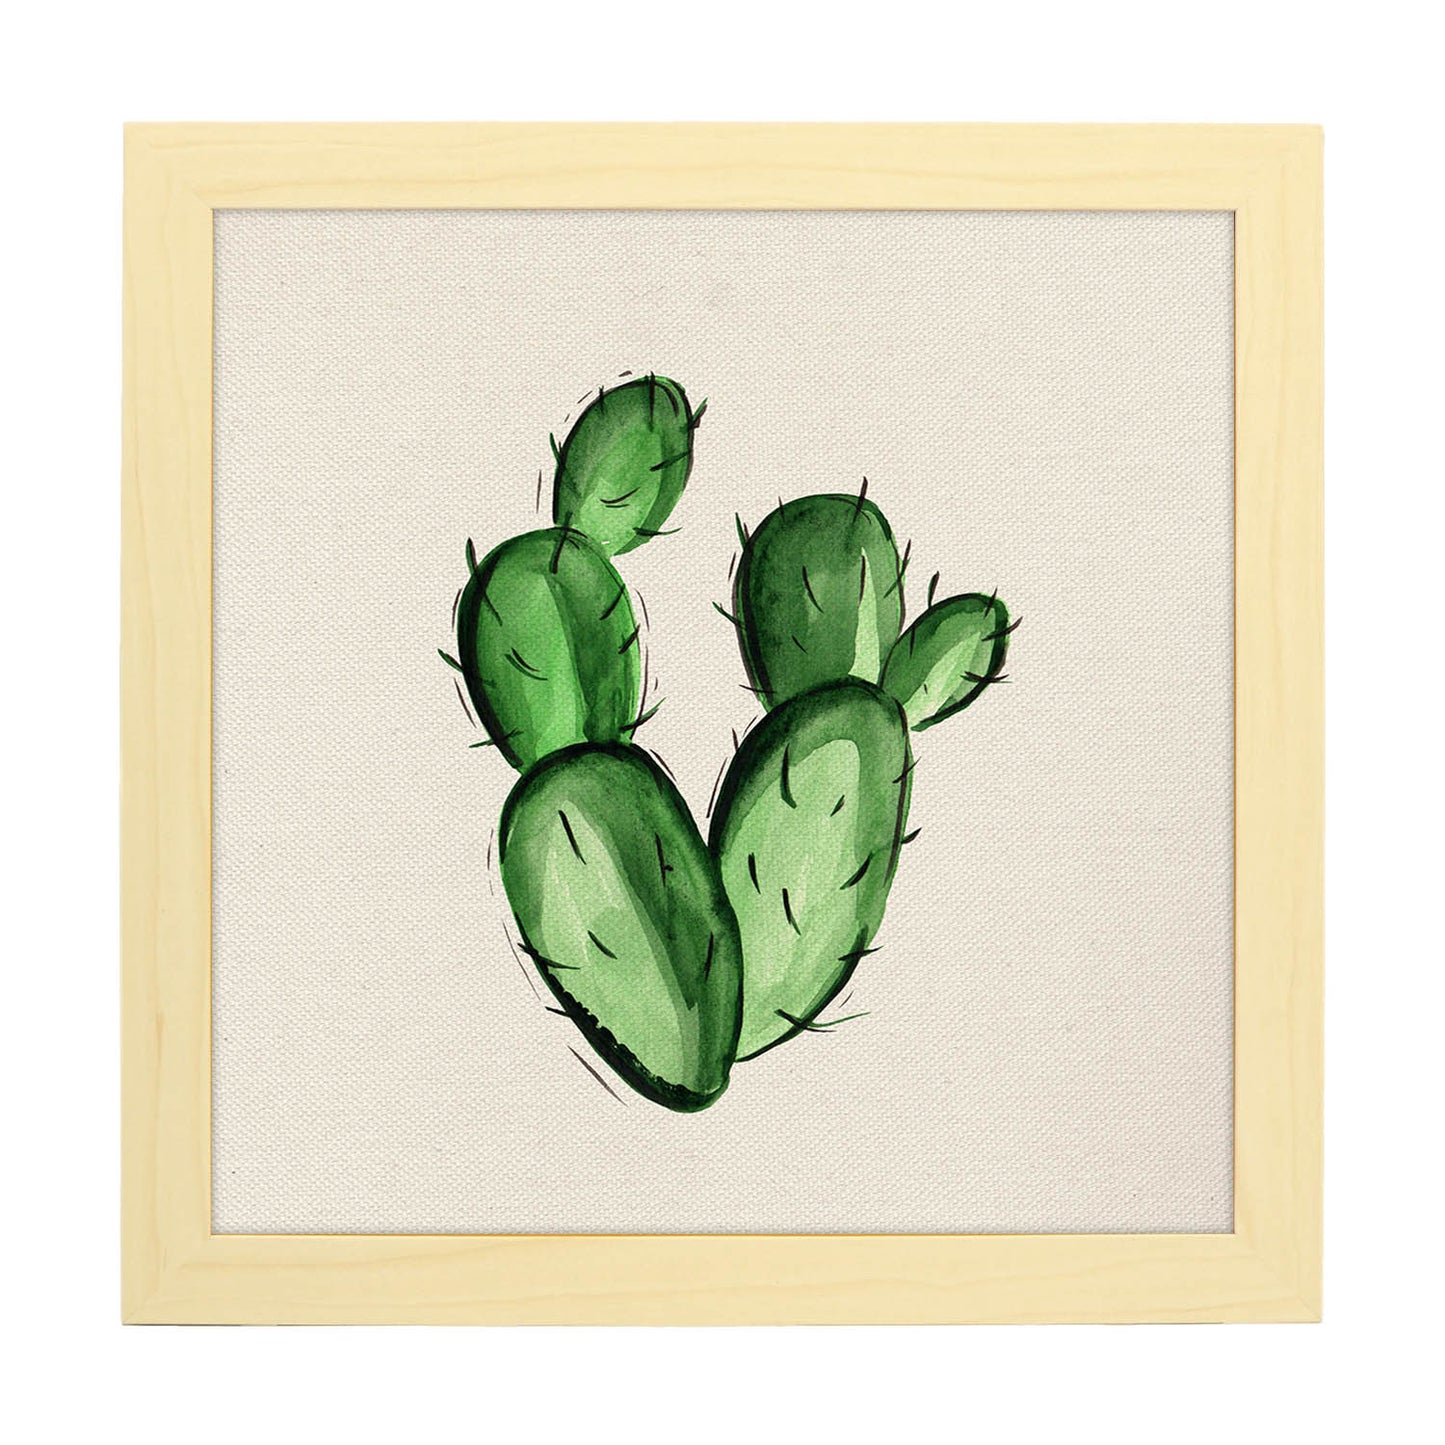 Poster de cactus dibujado. Lámina de Todo pasión-Artwork-Nacnic-25x25 cm-Marco Madera clara-Nacnic Estudio SL